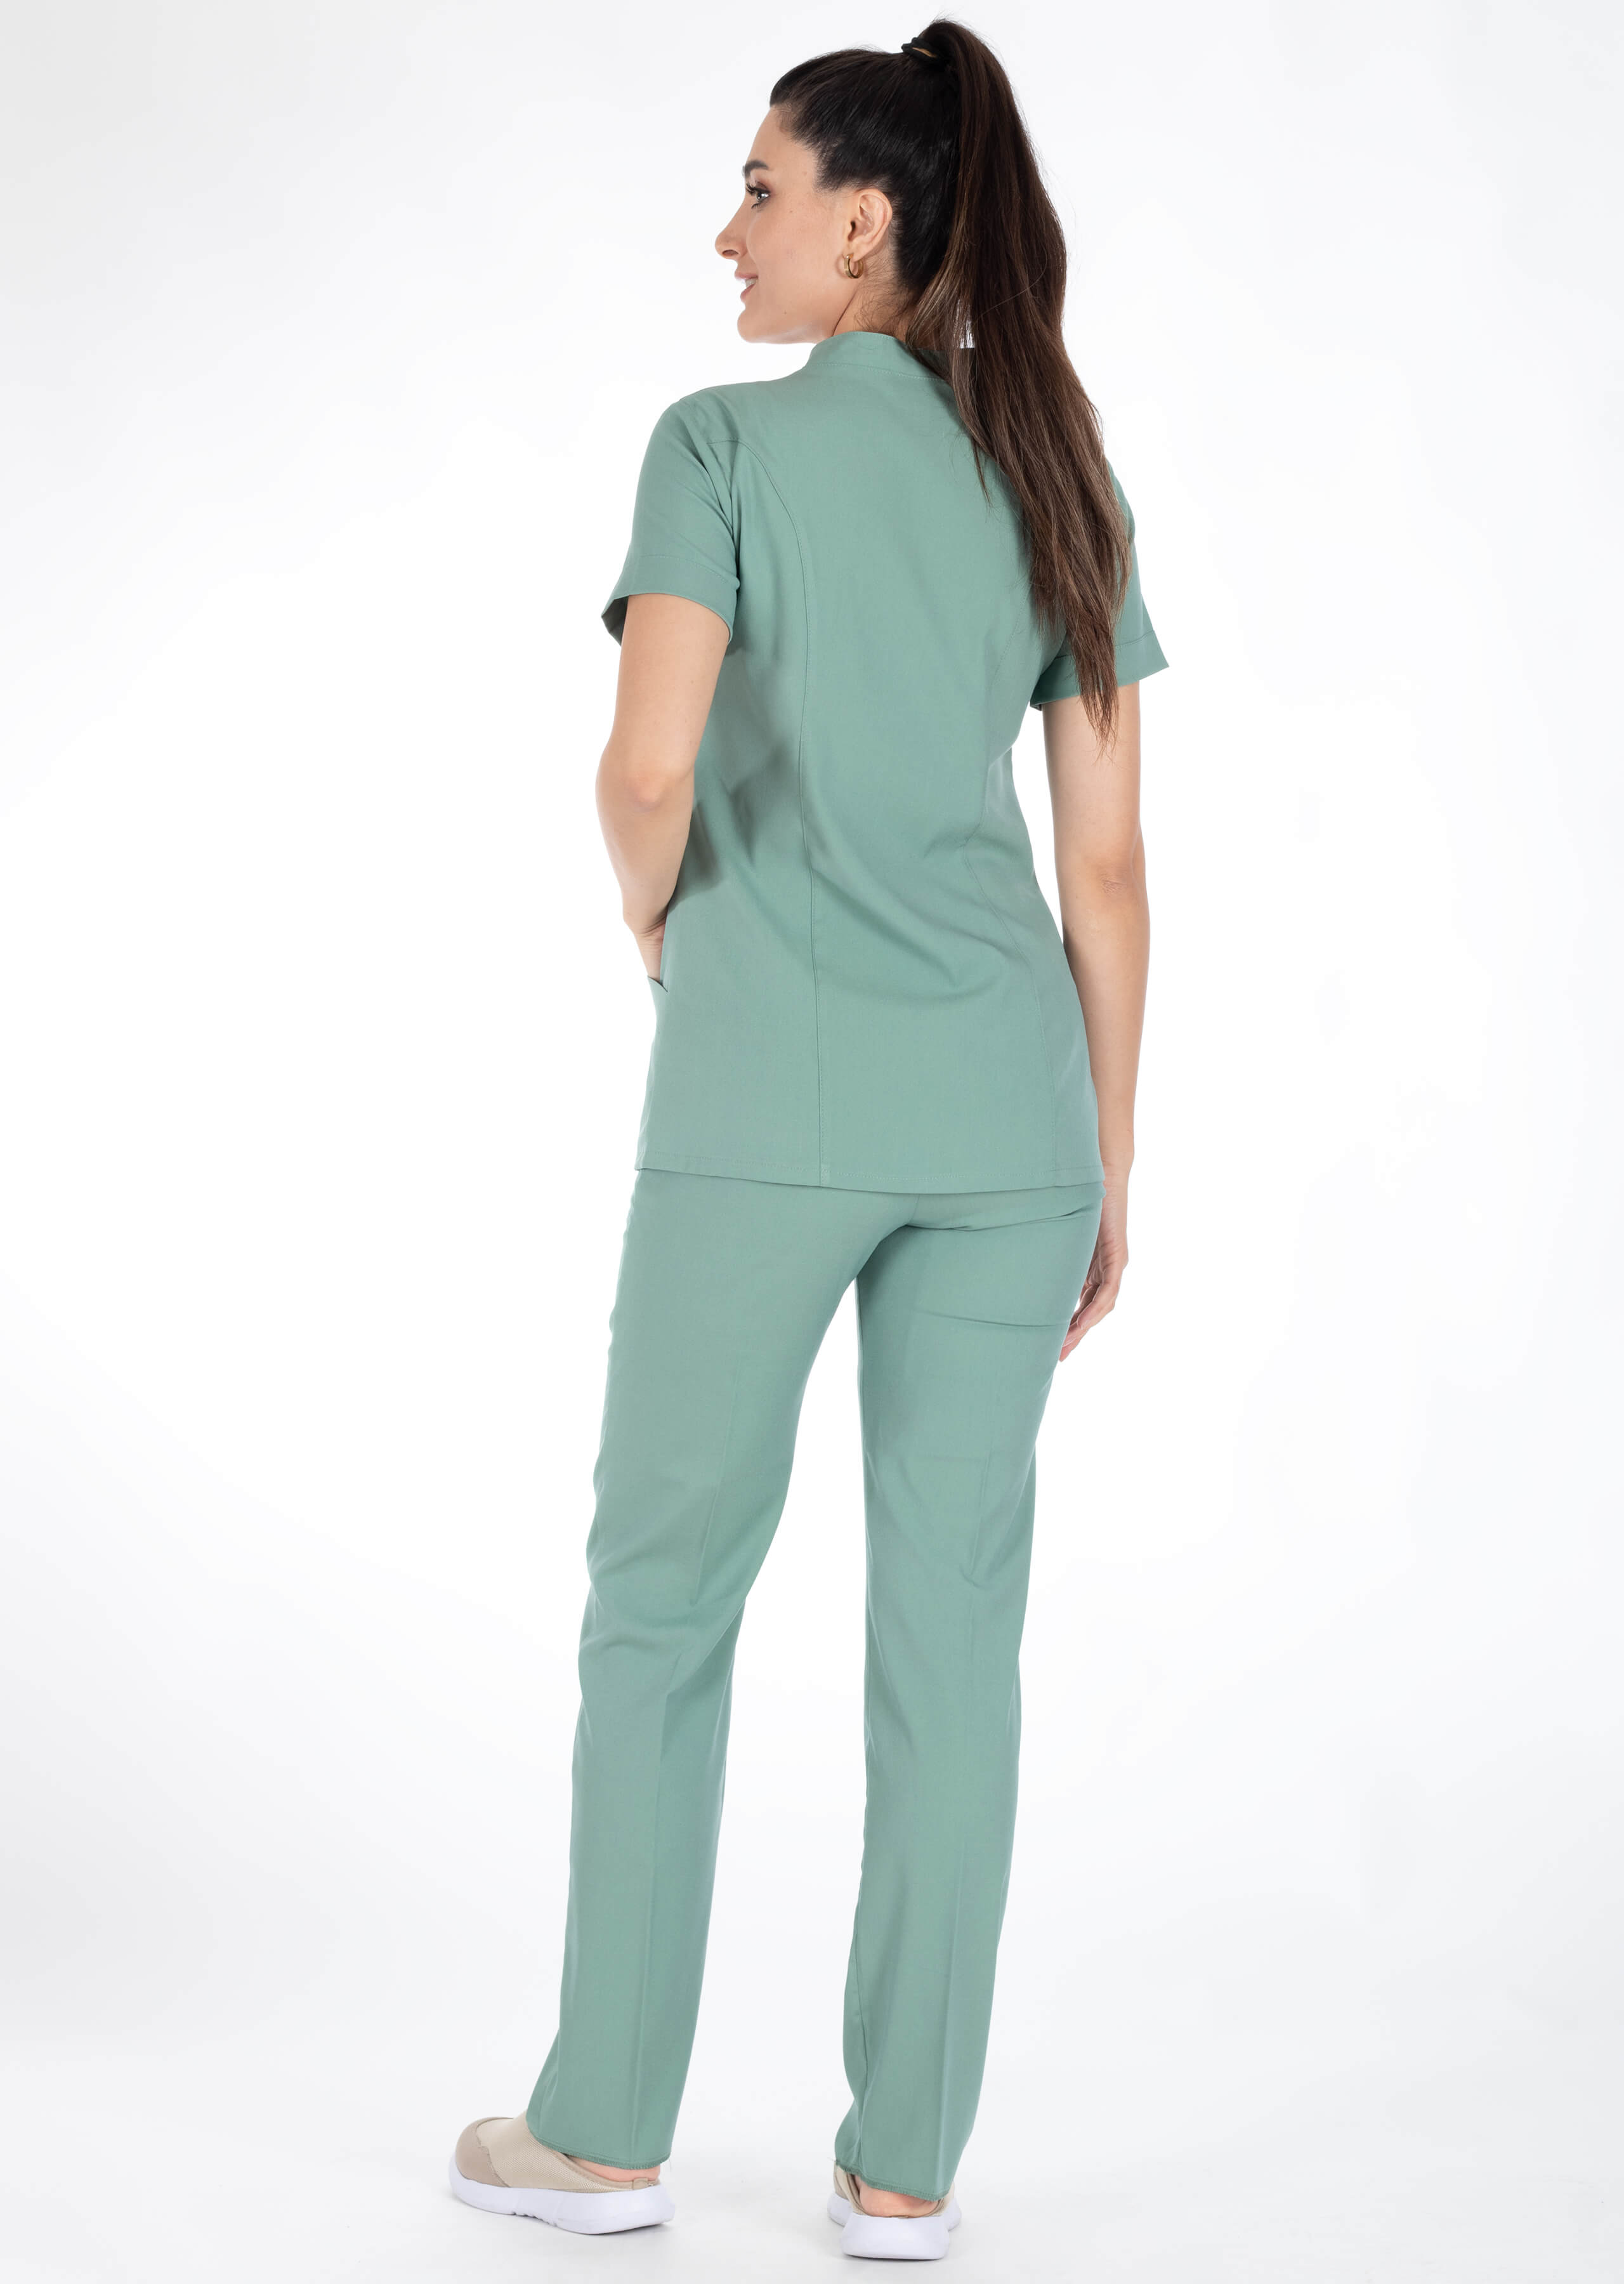 Luxe Flex Çağla Yeşili Likralı Hemşire ve Doktor Forması Takımı